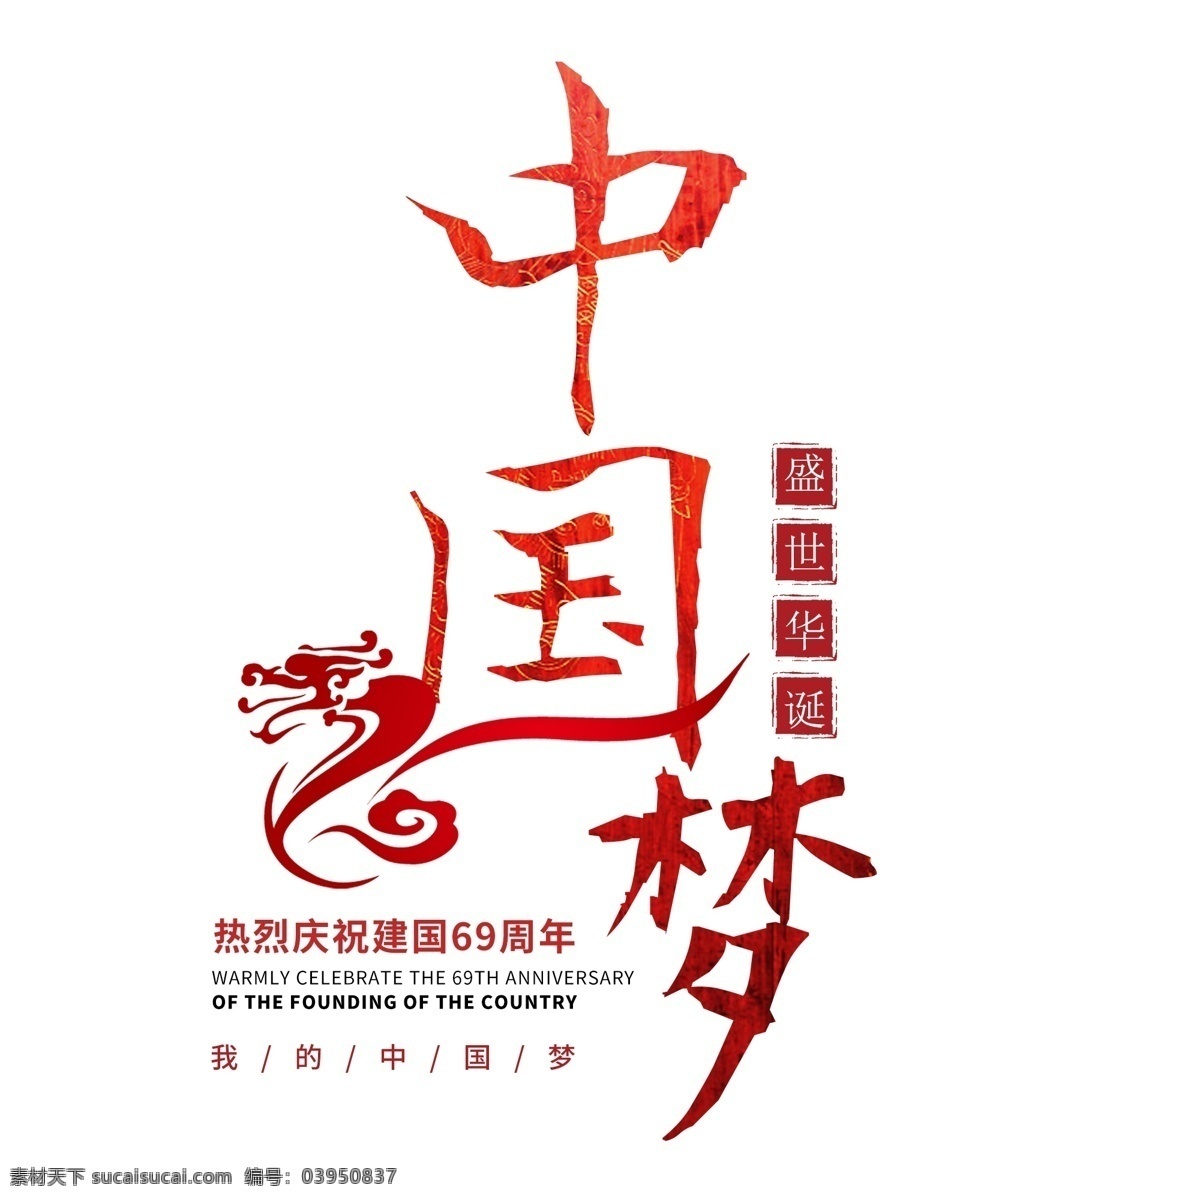 国庆节 中国 梦 周年 华诞 成立 建国 纪念日 大气 红色 喜庆 毛笔 中国梦 69周年